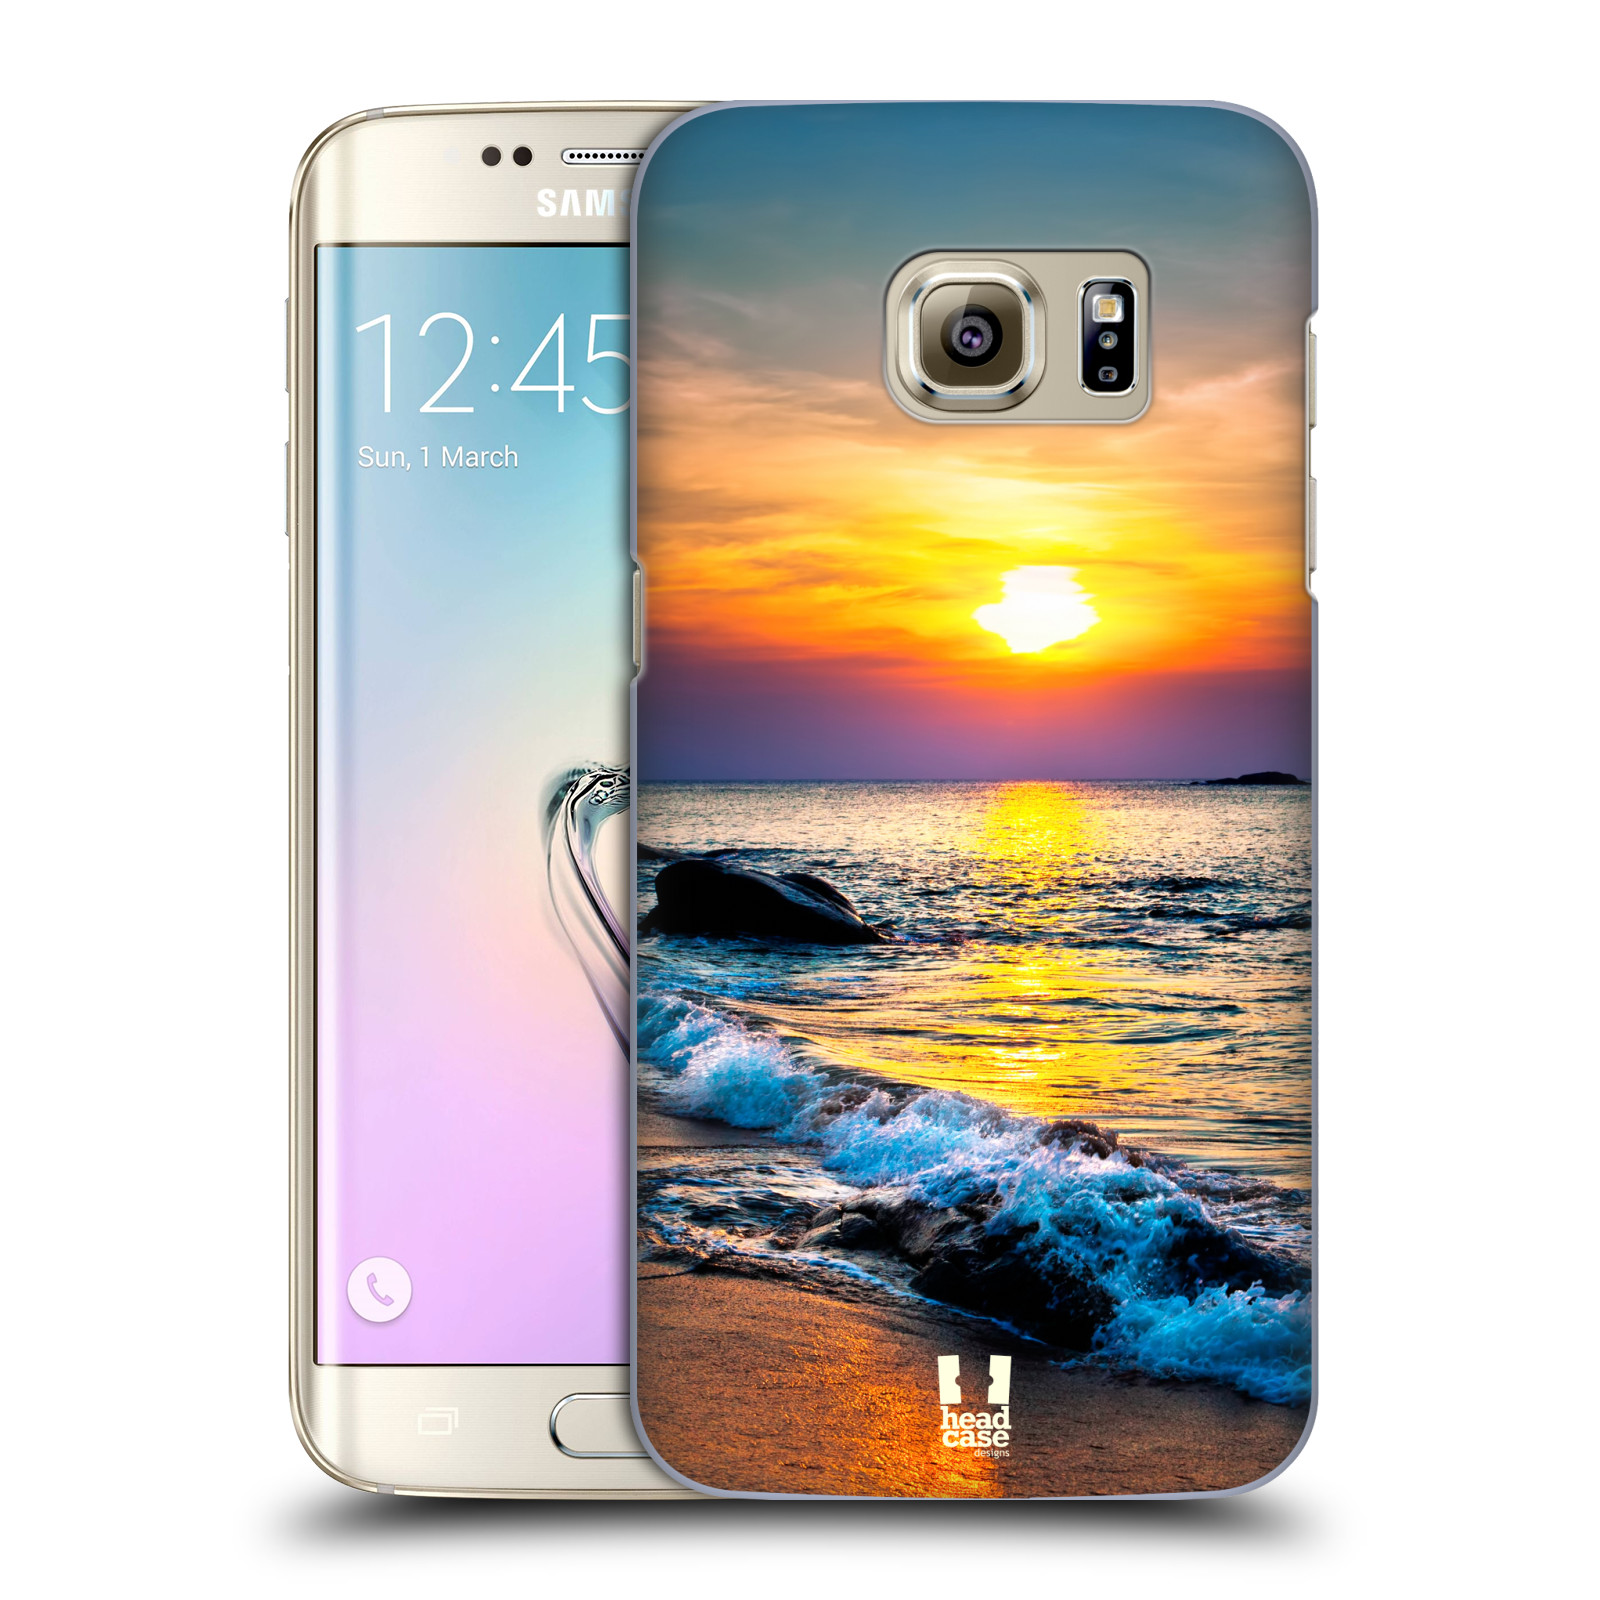 Zadní obal pro mobil Samsung Galaxy S7 EDGE - HEAD CASE - Pláže a moře západ slunce